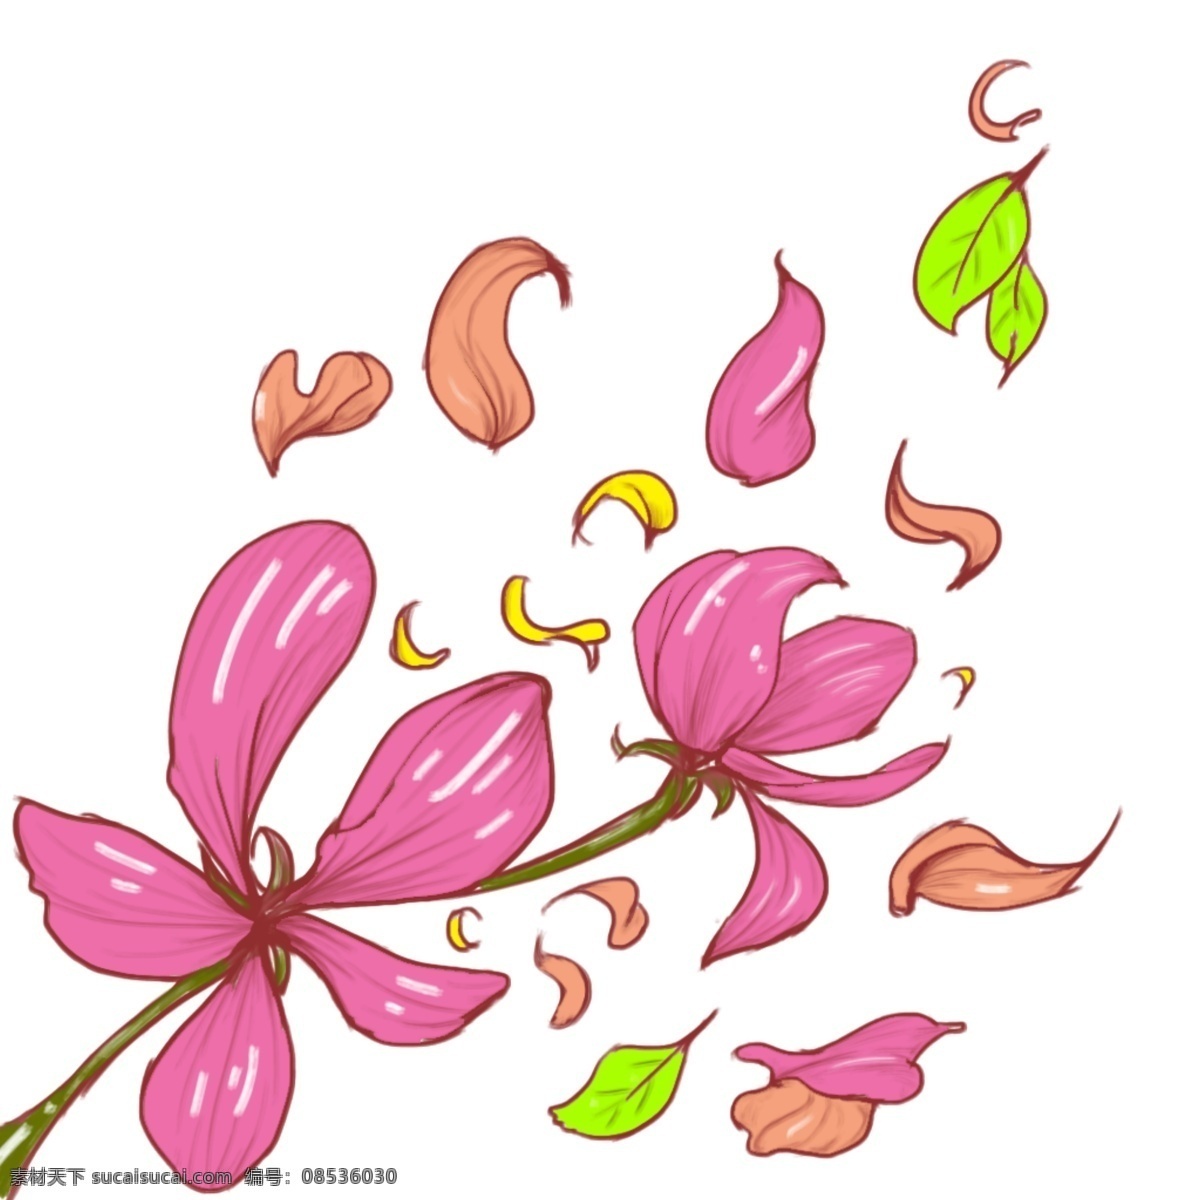 手绘 透明 底 飘落 花瓣 花 元素 商用 书签 贴图画 手绘花与花瓣 墙 画 可商用花素材